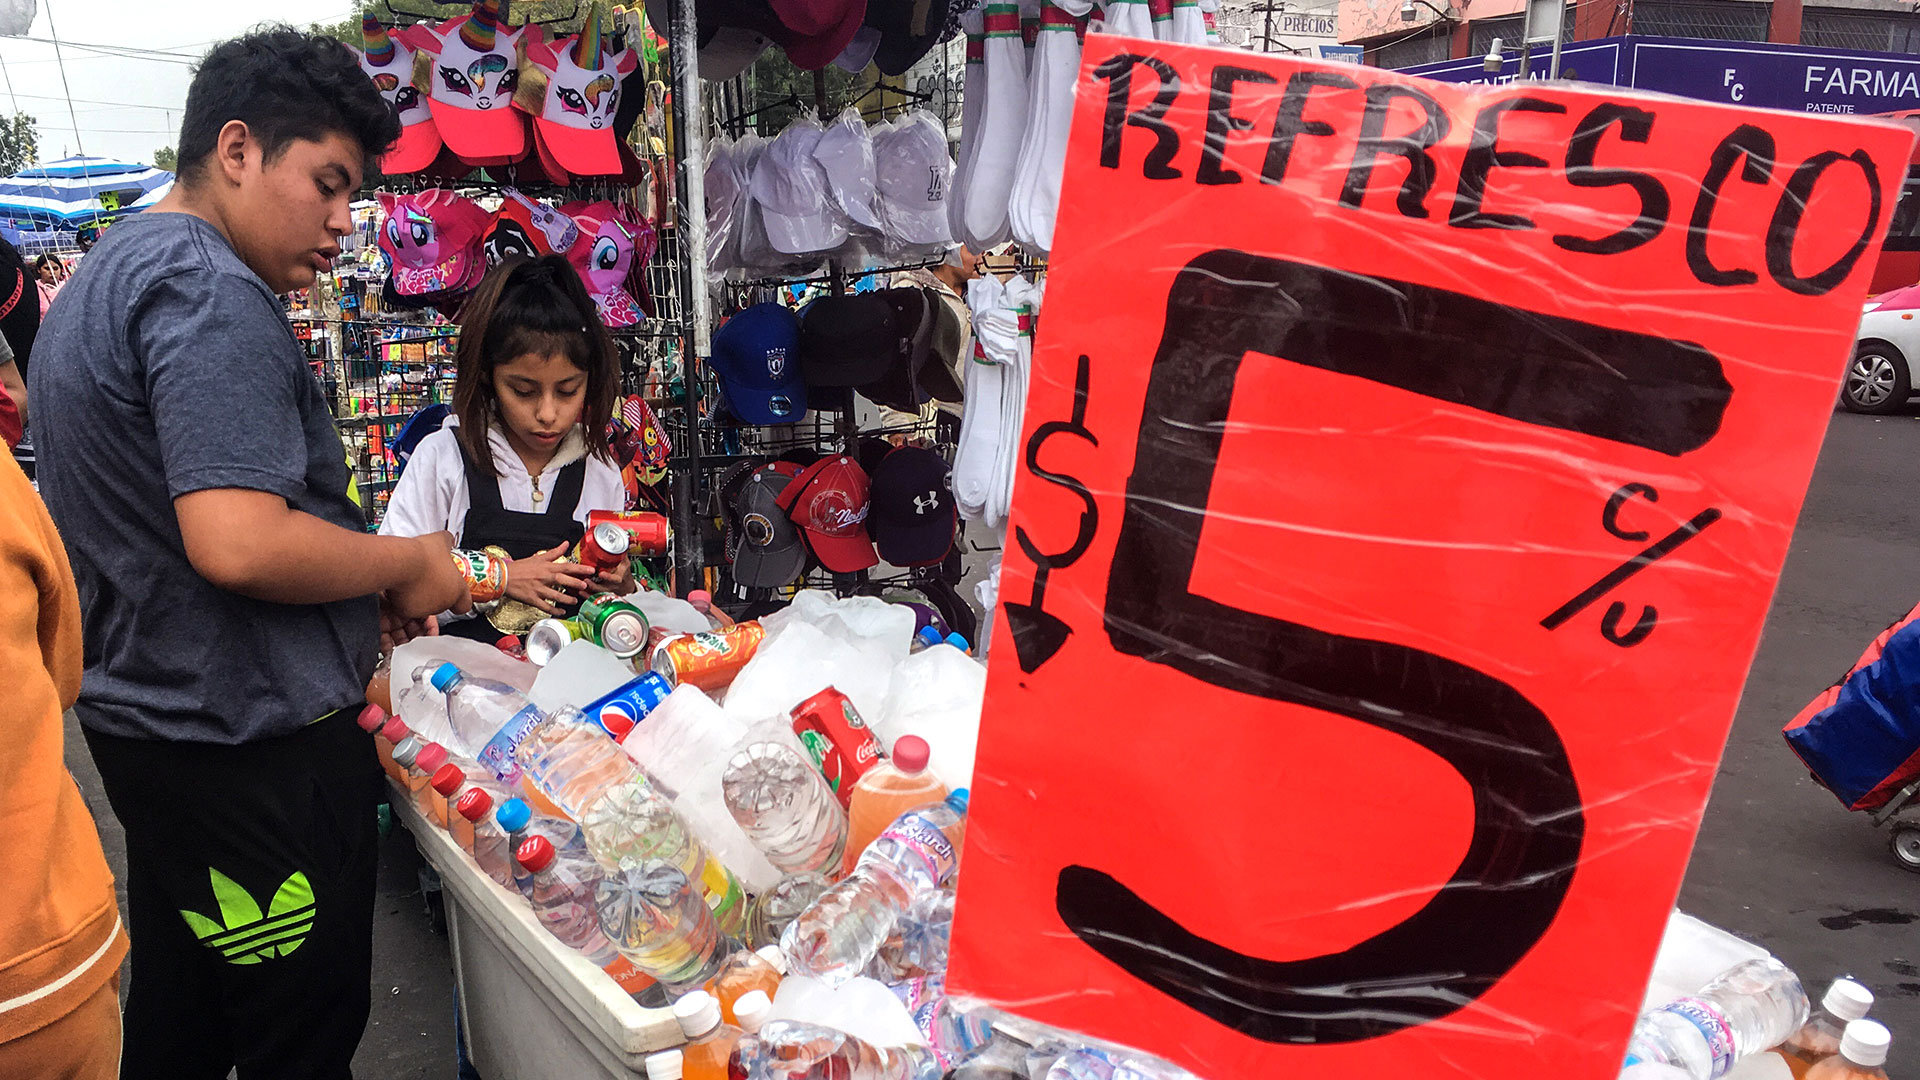 México ha tomado medidas para prohibir la venta de comida chatarra a menores, entre ellos Oaxaca y Tabasco.
Foto: Archivo